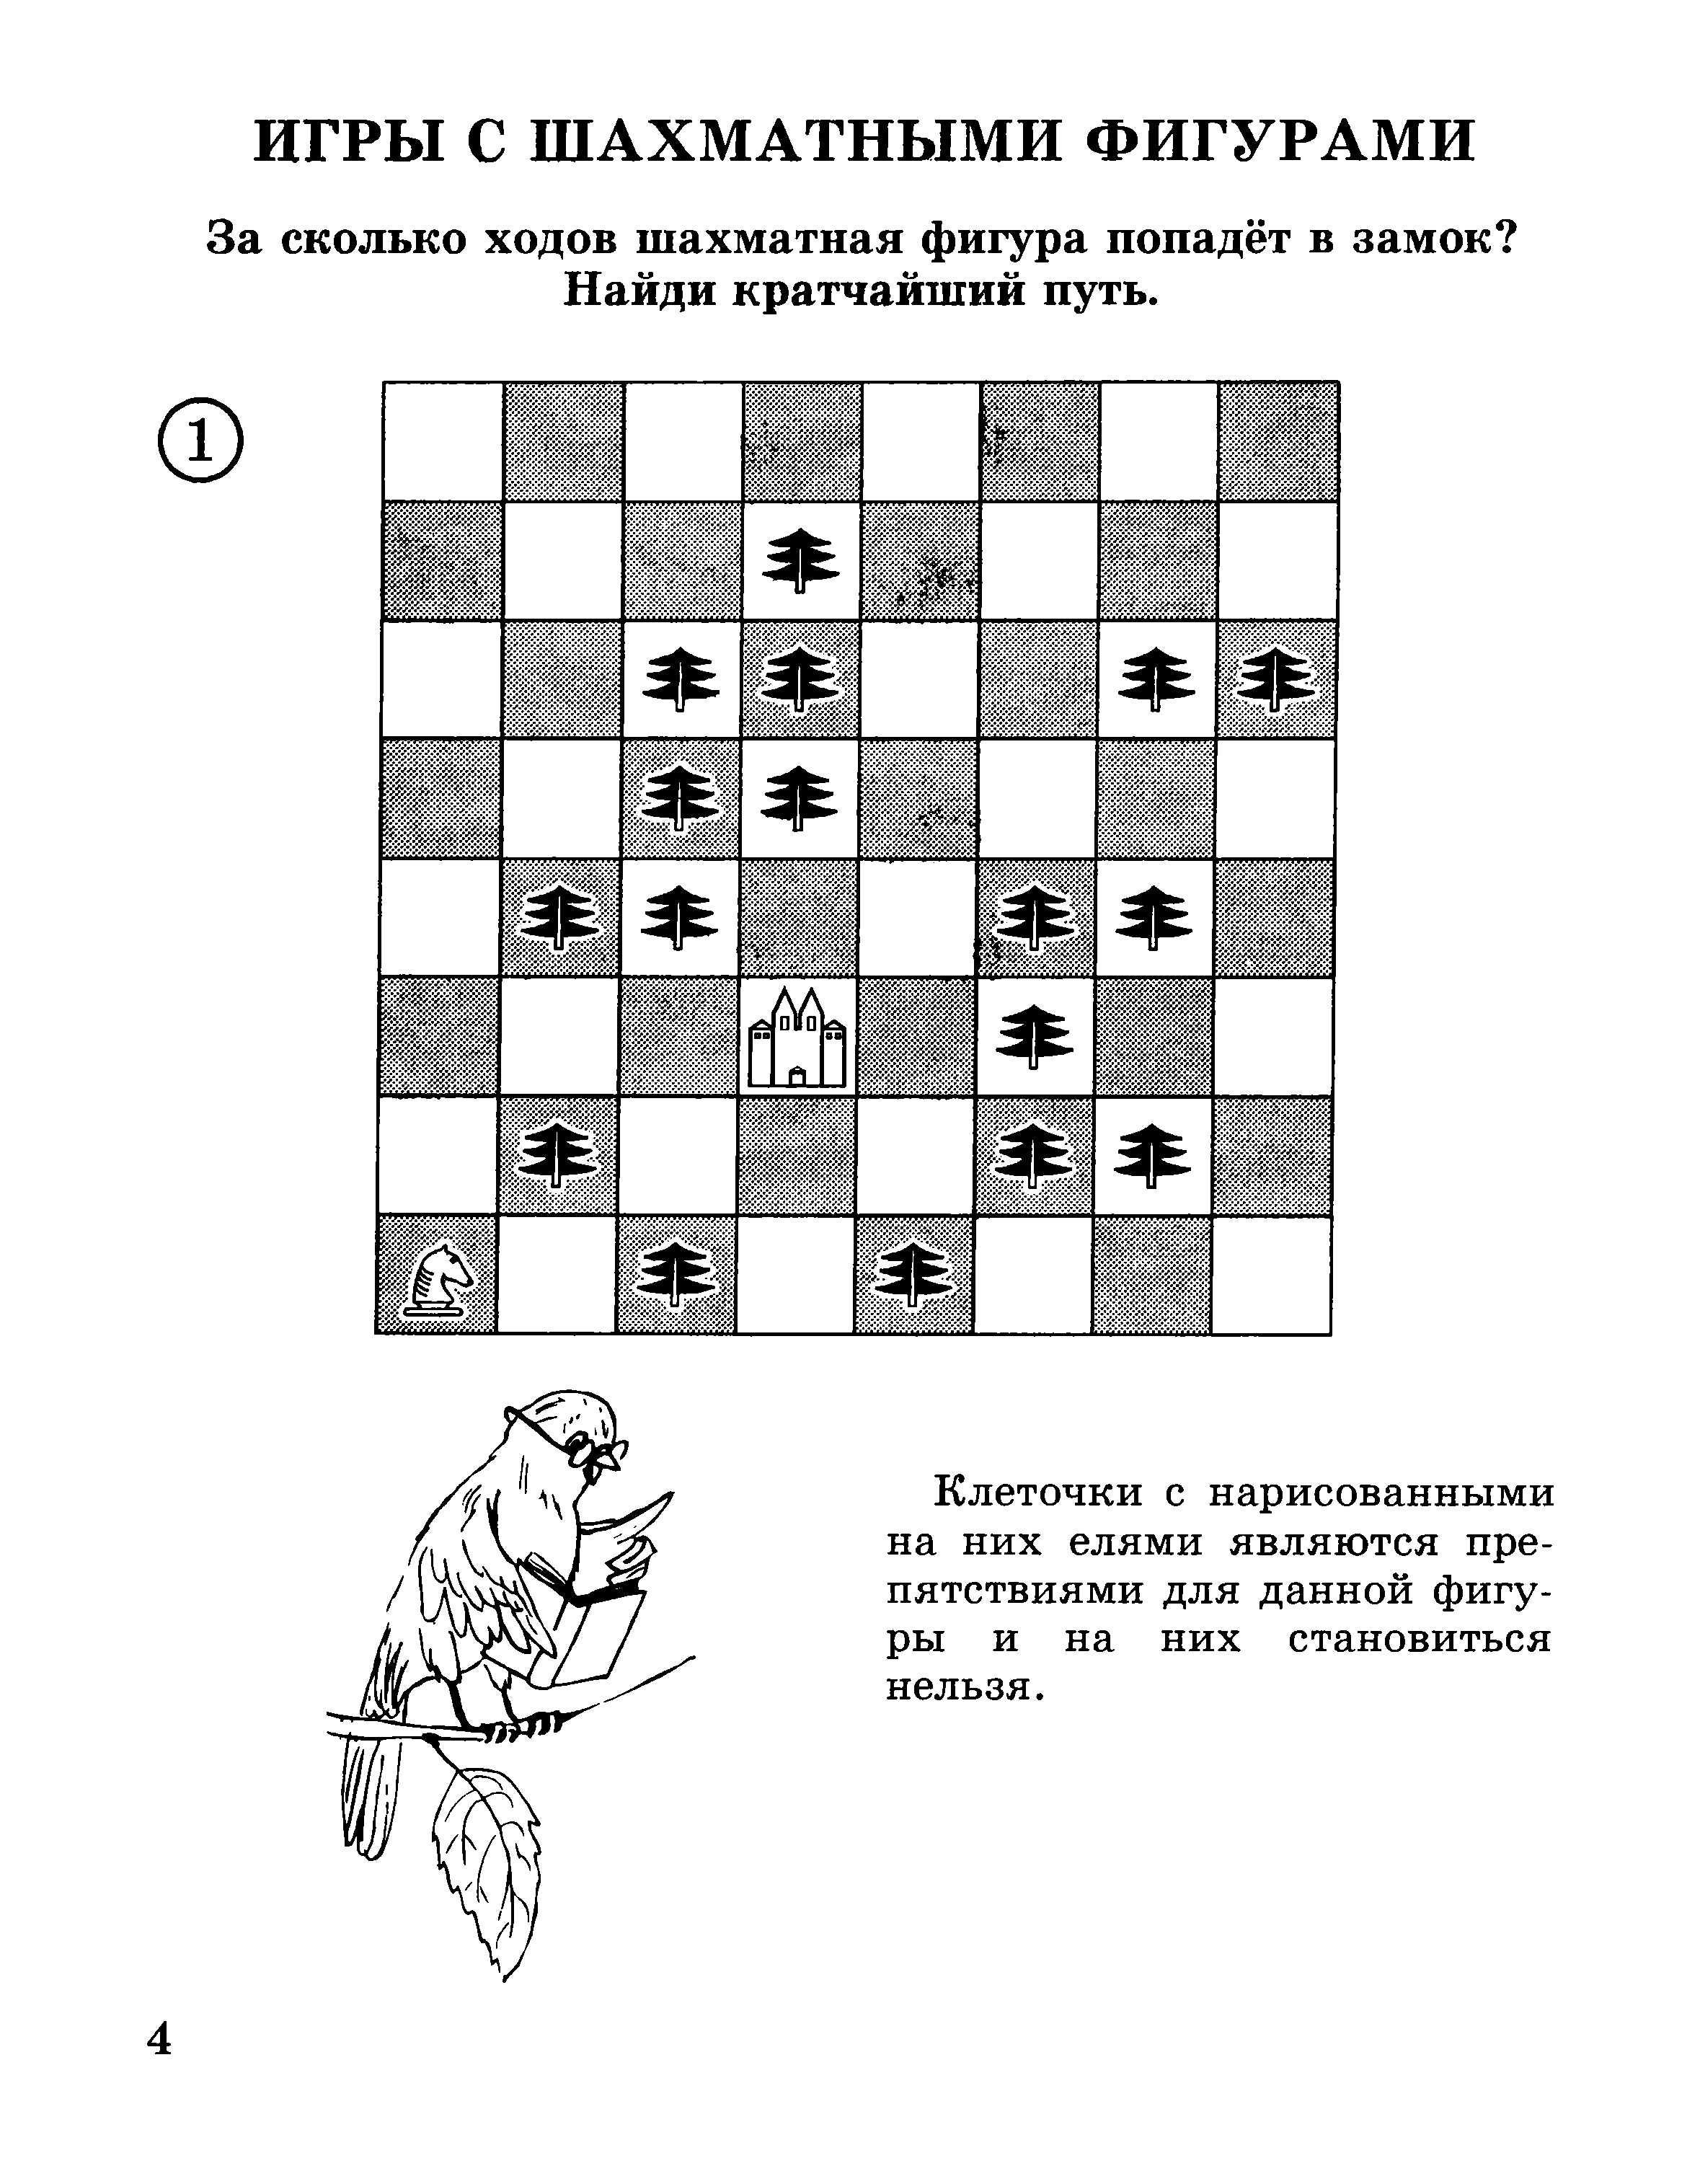 Игра в шахматы задачи. Задачи шахматы 1 год обучения. Задачи по шахматам для дошколят. Задание по шахматам для начинающих детей. Задачи по шахматам для детей 5 лет.